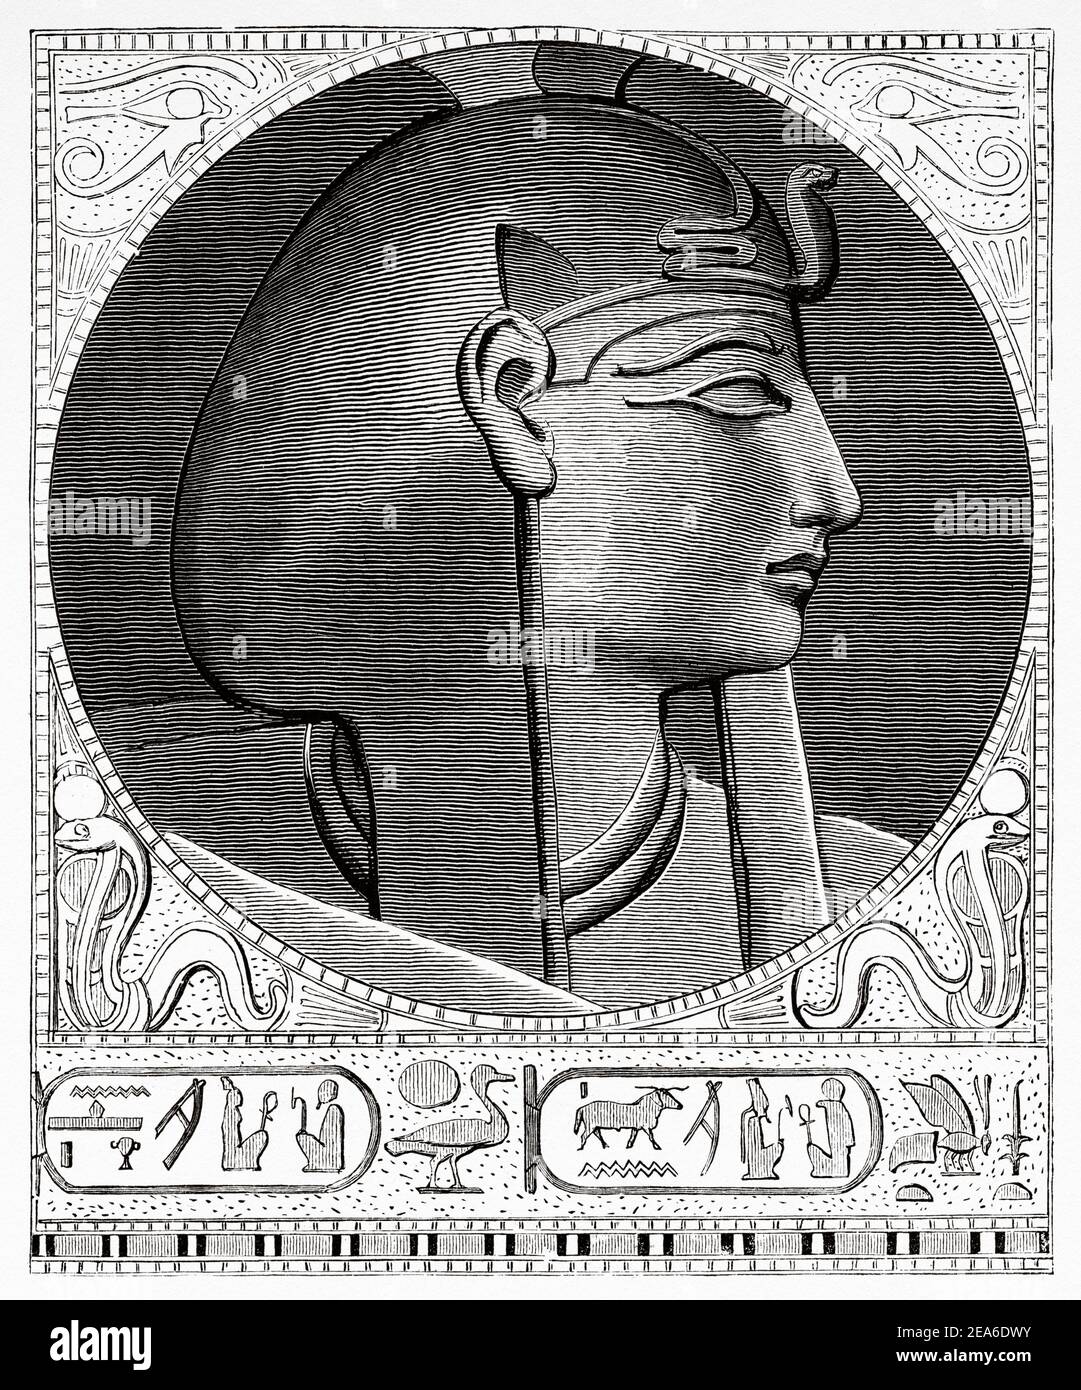 Porträt von Merenptah vierten pharao der XIX Dynastie. Alte Ägypten Geschichte. Alte 19th Jahrhundert gravierte Illustration von El Mundo Ilustrado 1879 Stockfoto